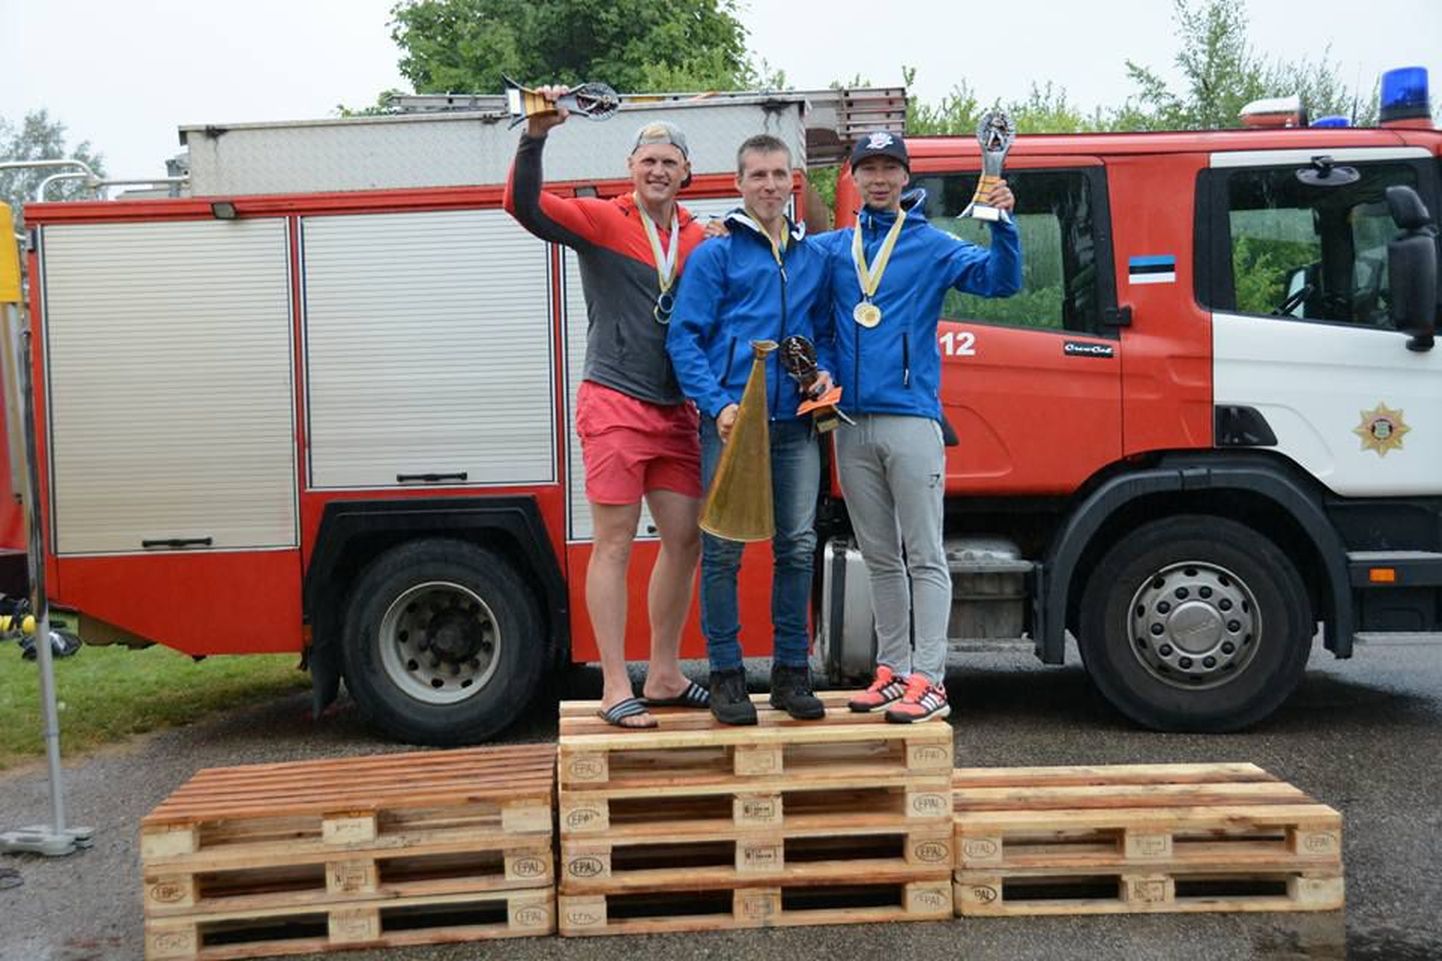 Tugevaima päästja tiitli võitis viiendat aastat järjest Tõrva päästekomando pealik Alor Kasepõld. Teise koha võitles välja Sander Kaasik Mustvee komandost ja kolmanda Kristjan Mikk Tõrvast.